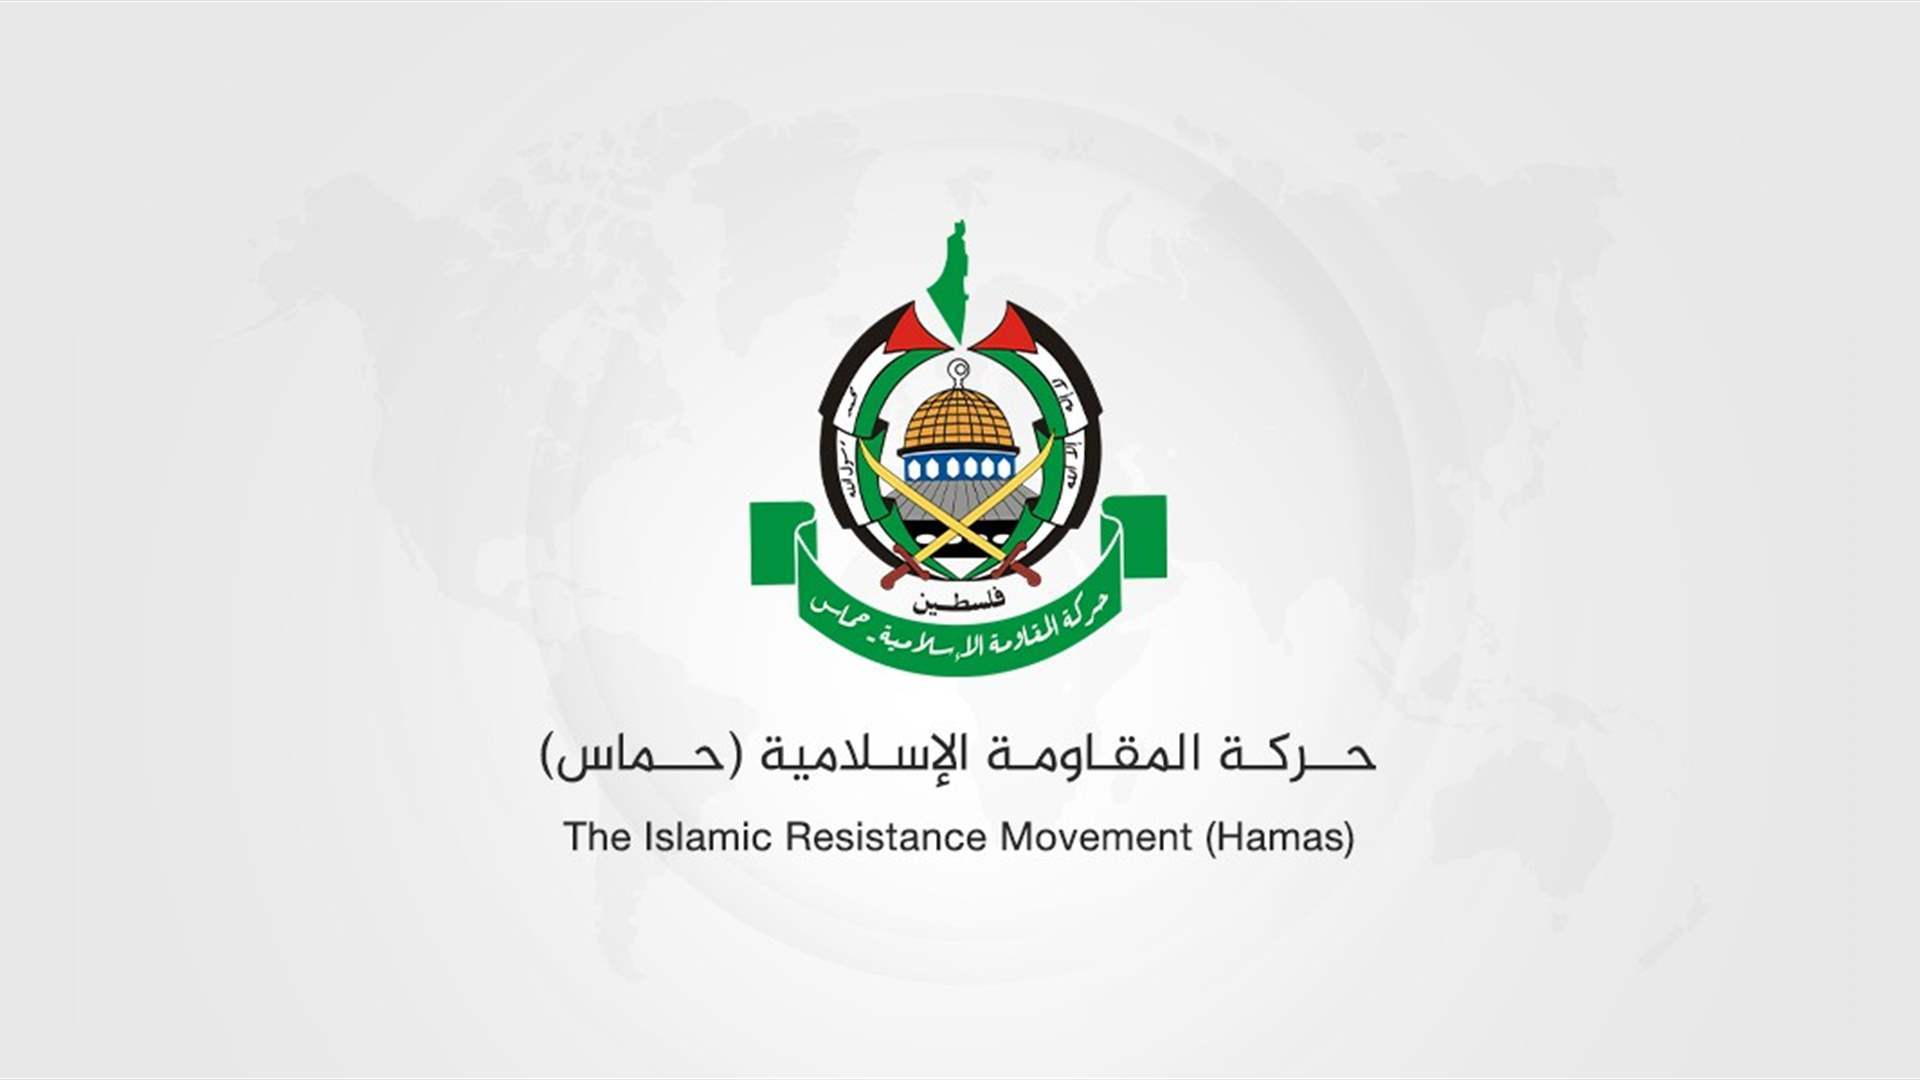  حماس: لضرورة الوصول إلى وقف دائم لإطلاق النار يؤدي الى انسحاب جميع القوات الصهيونية وعودة النازحين